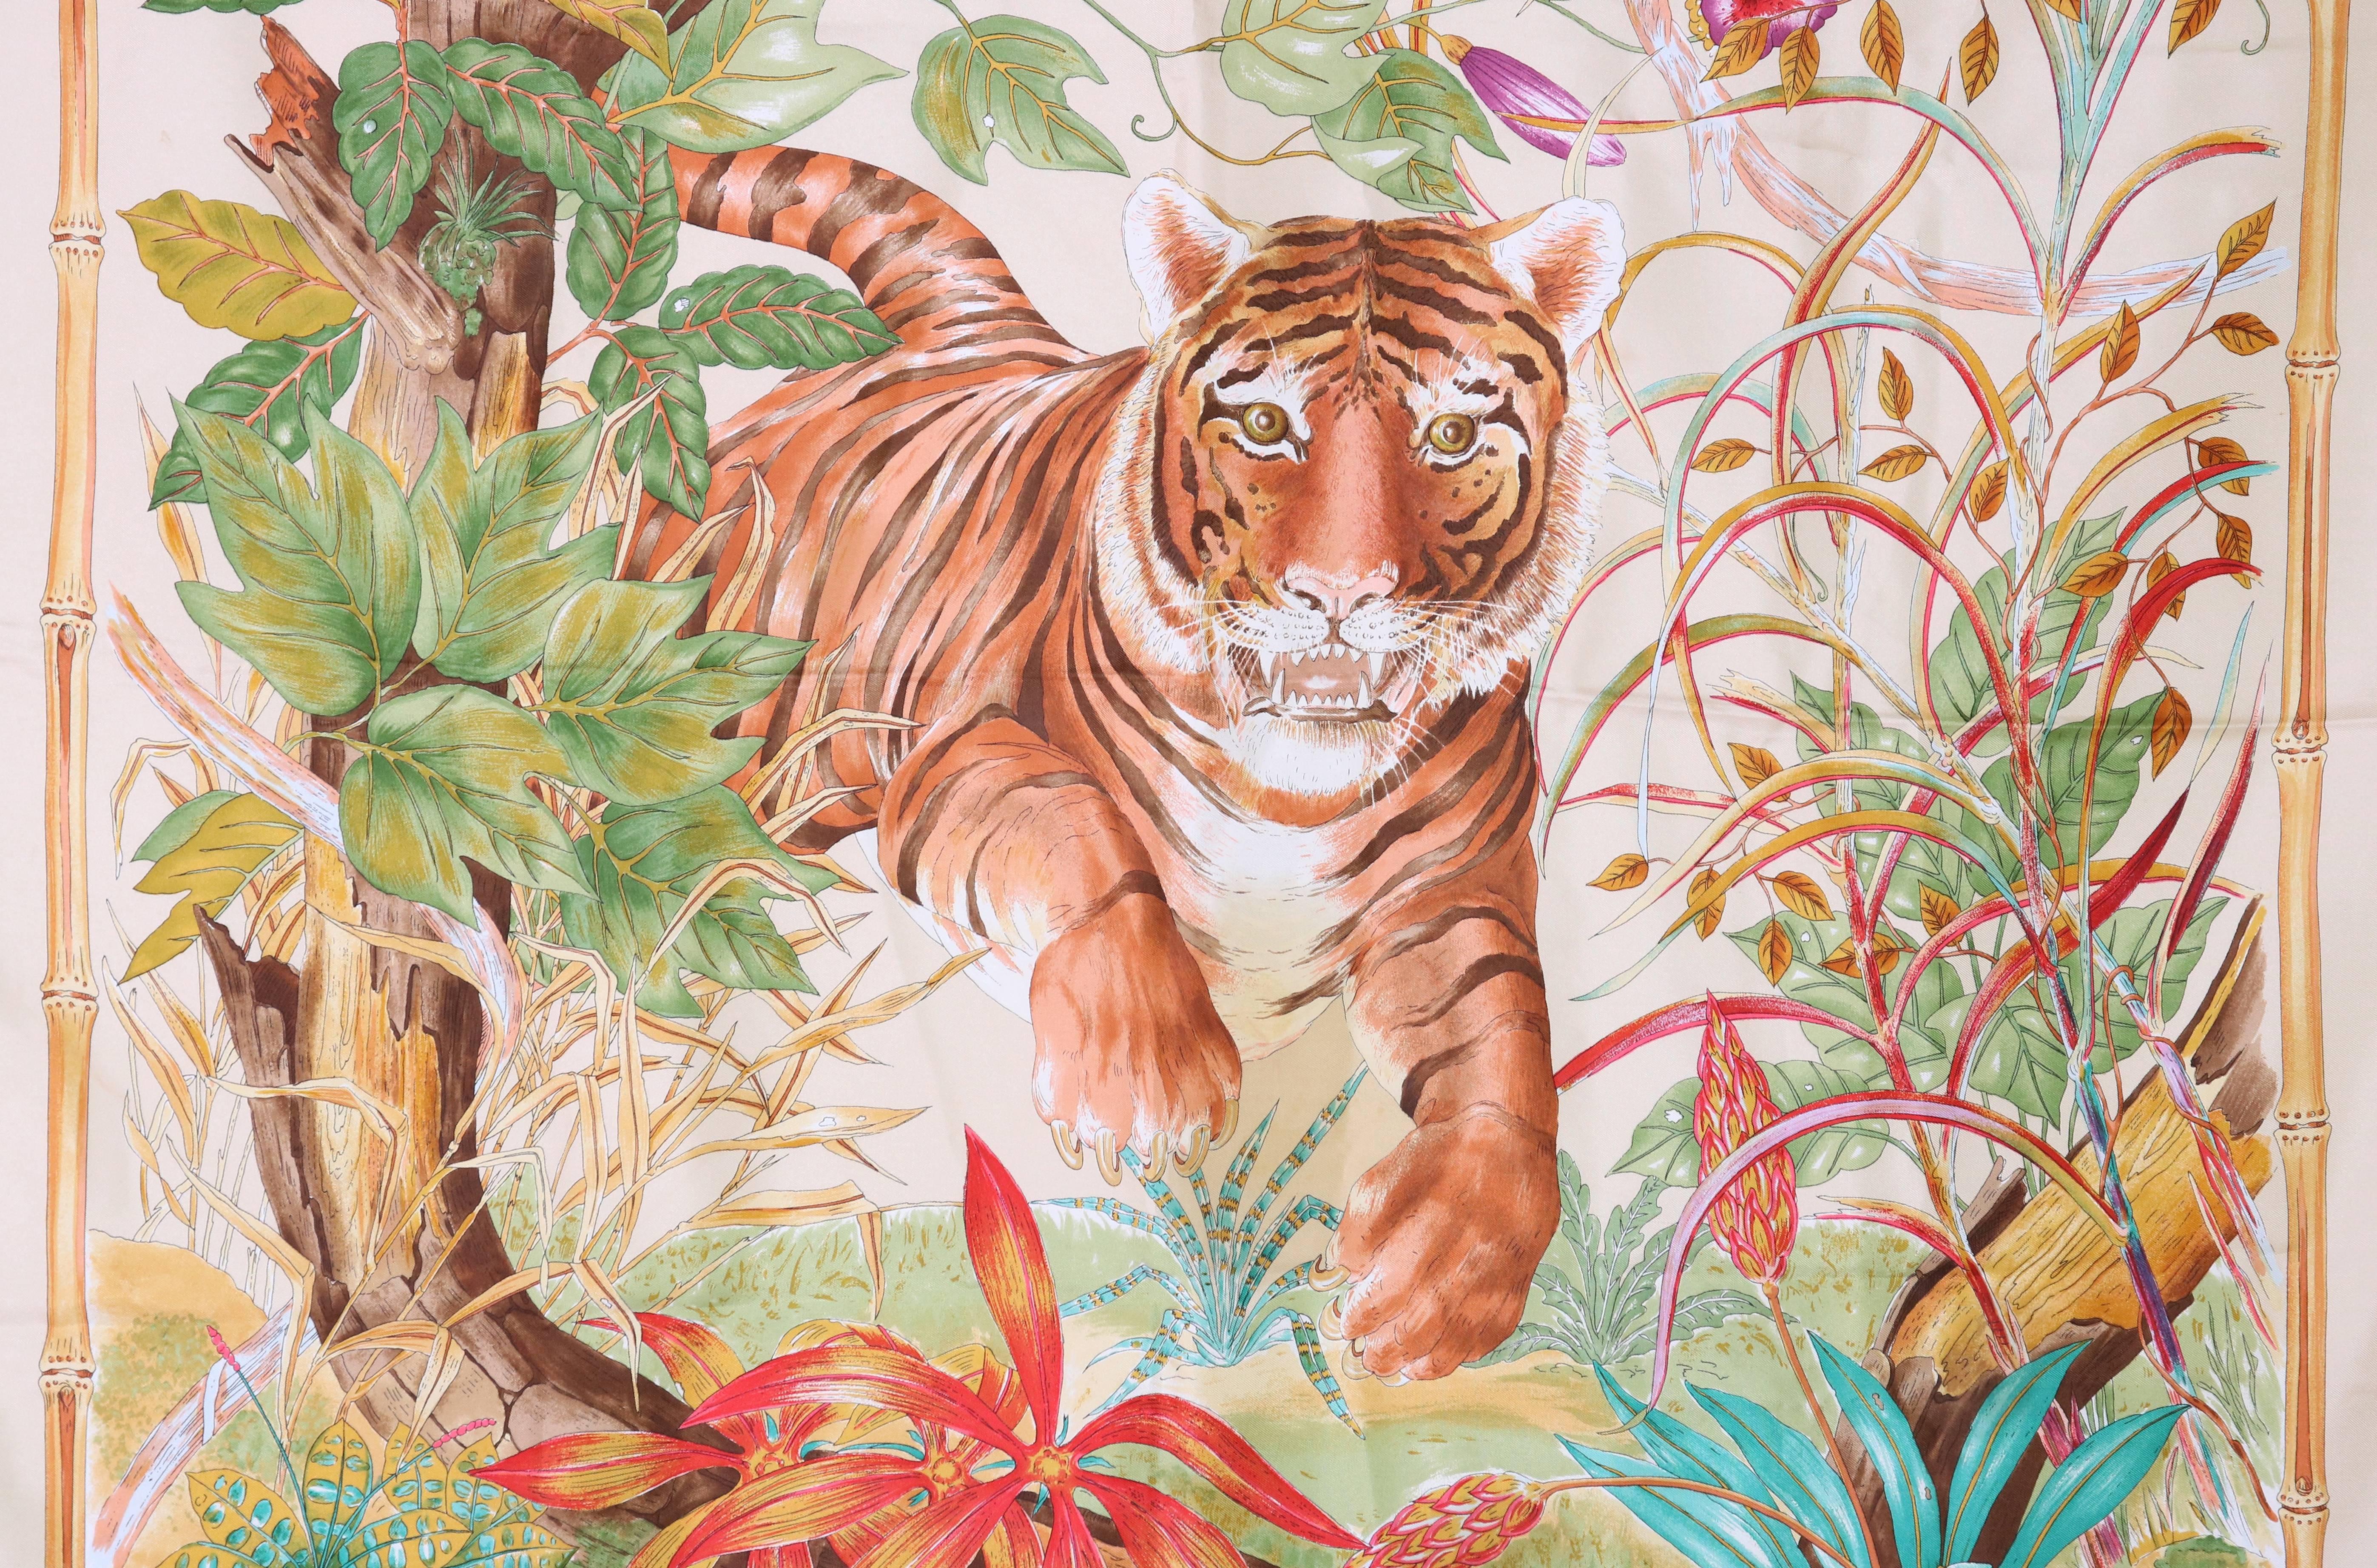 Echarpe en soie Gucci des années 1970 avec un tigre dans la jungle encadré d'une bordure de bambou. Logo Gucci dans les coins supérieur gauche et inférieur droit. En très bon état avec une minuscule marque rose pâle à un coin. Labellisé 